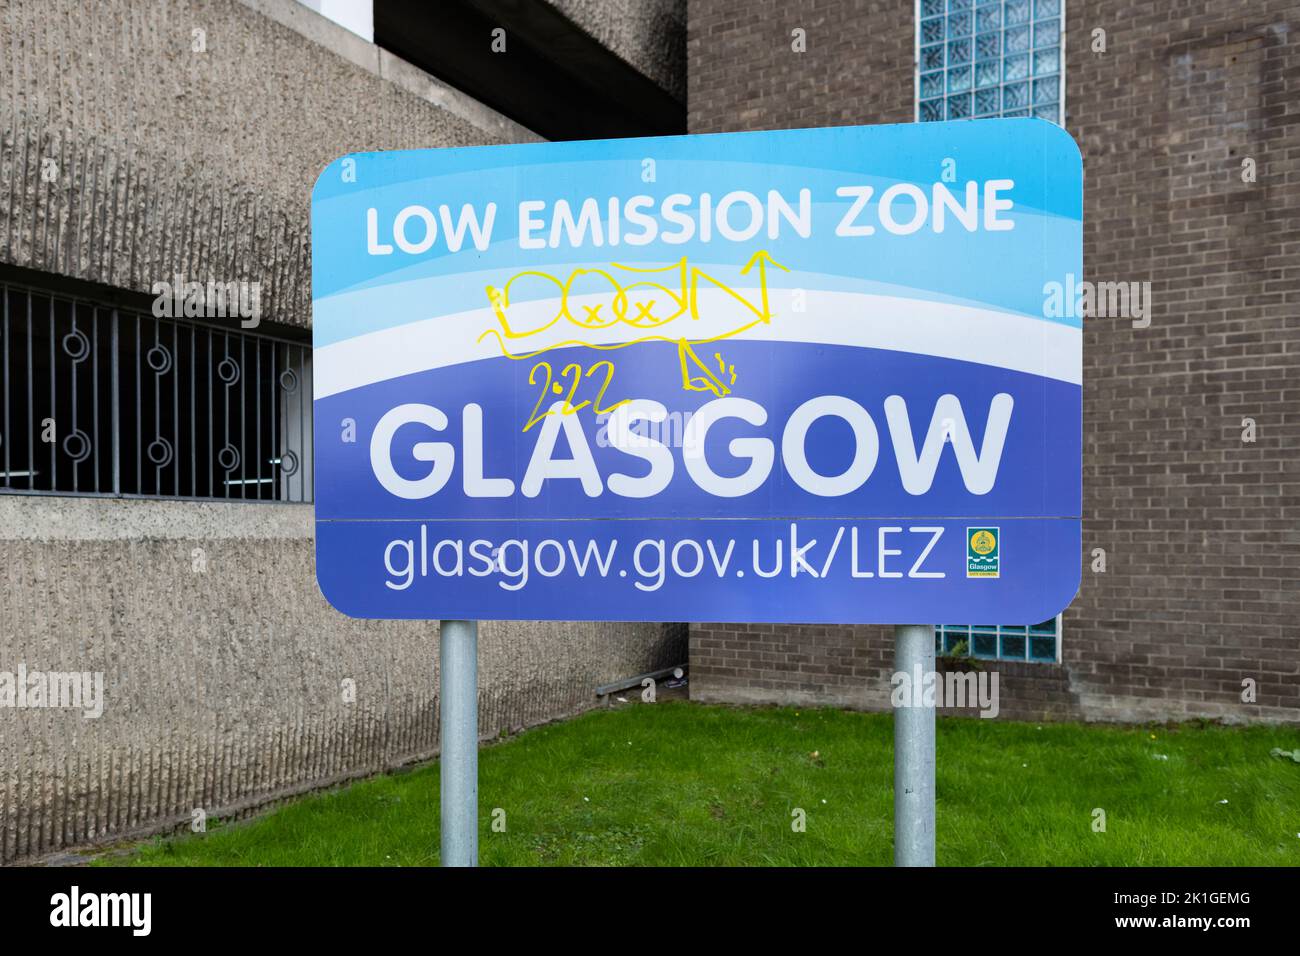 Glasgow Low Emission Zone sign - Glasgow, Scotland, UK Stock Photo